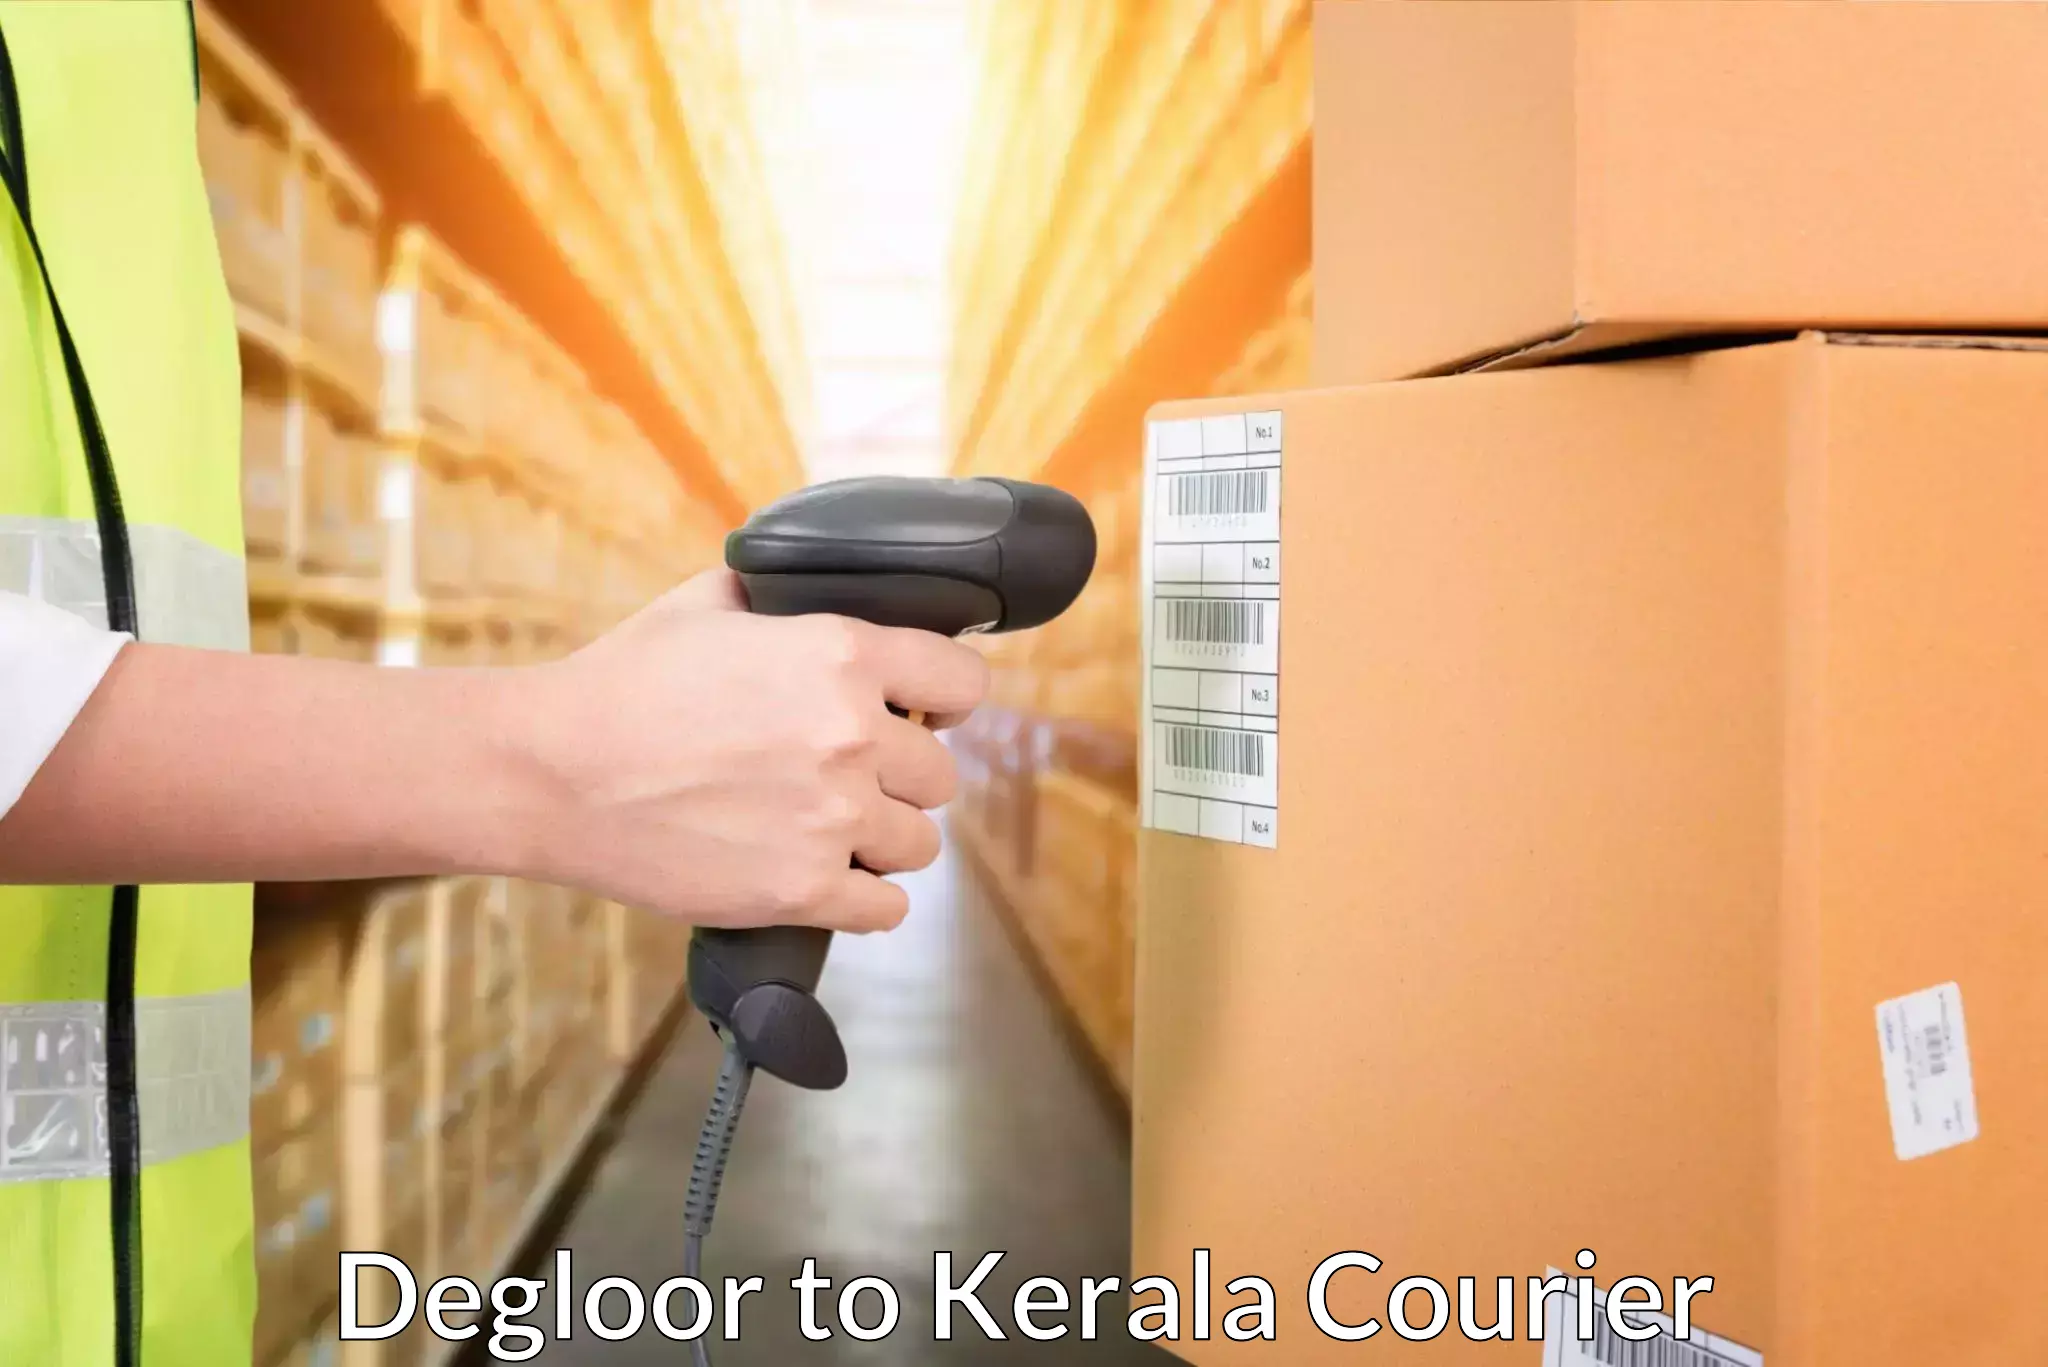 Courier service efficiency Degloor to Irinjalakuda